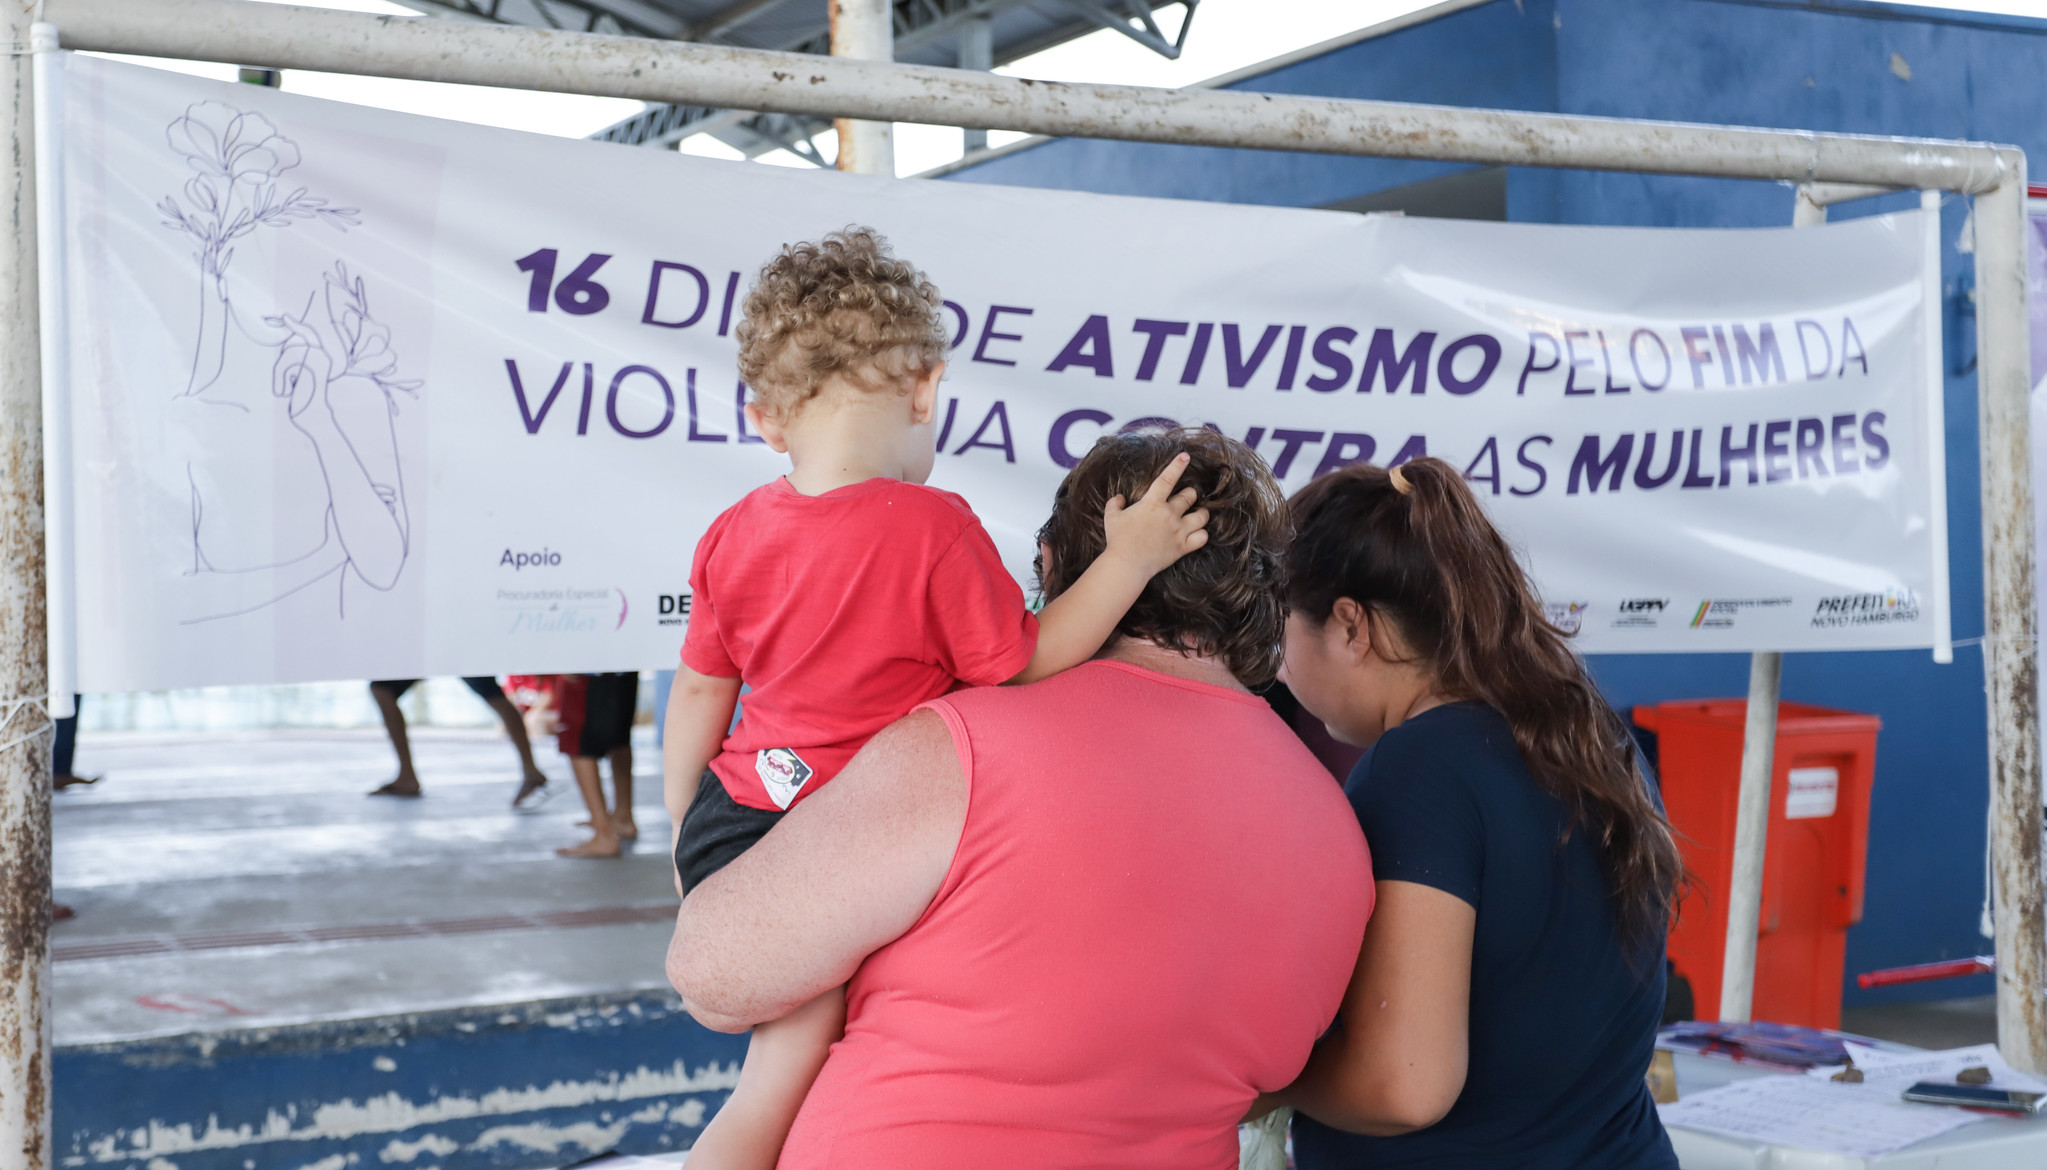 Domingo por Elas leva informações contra violência de gênero ao Santo Afonso